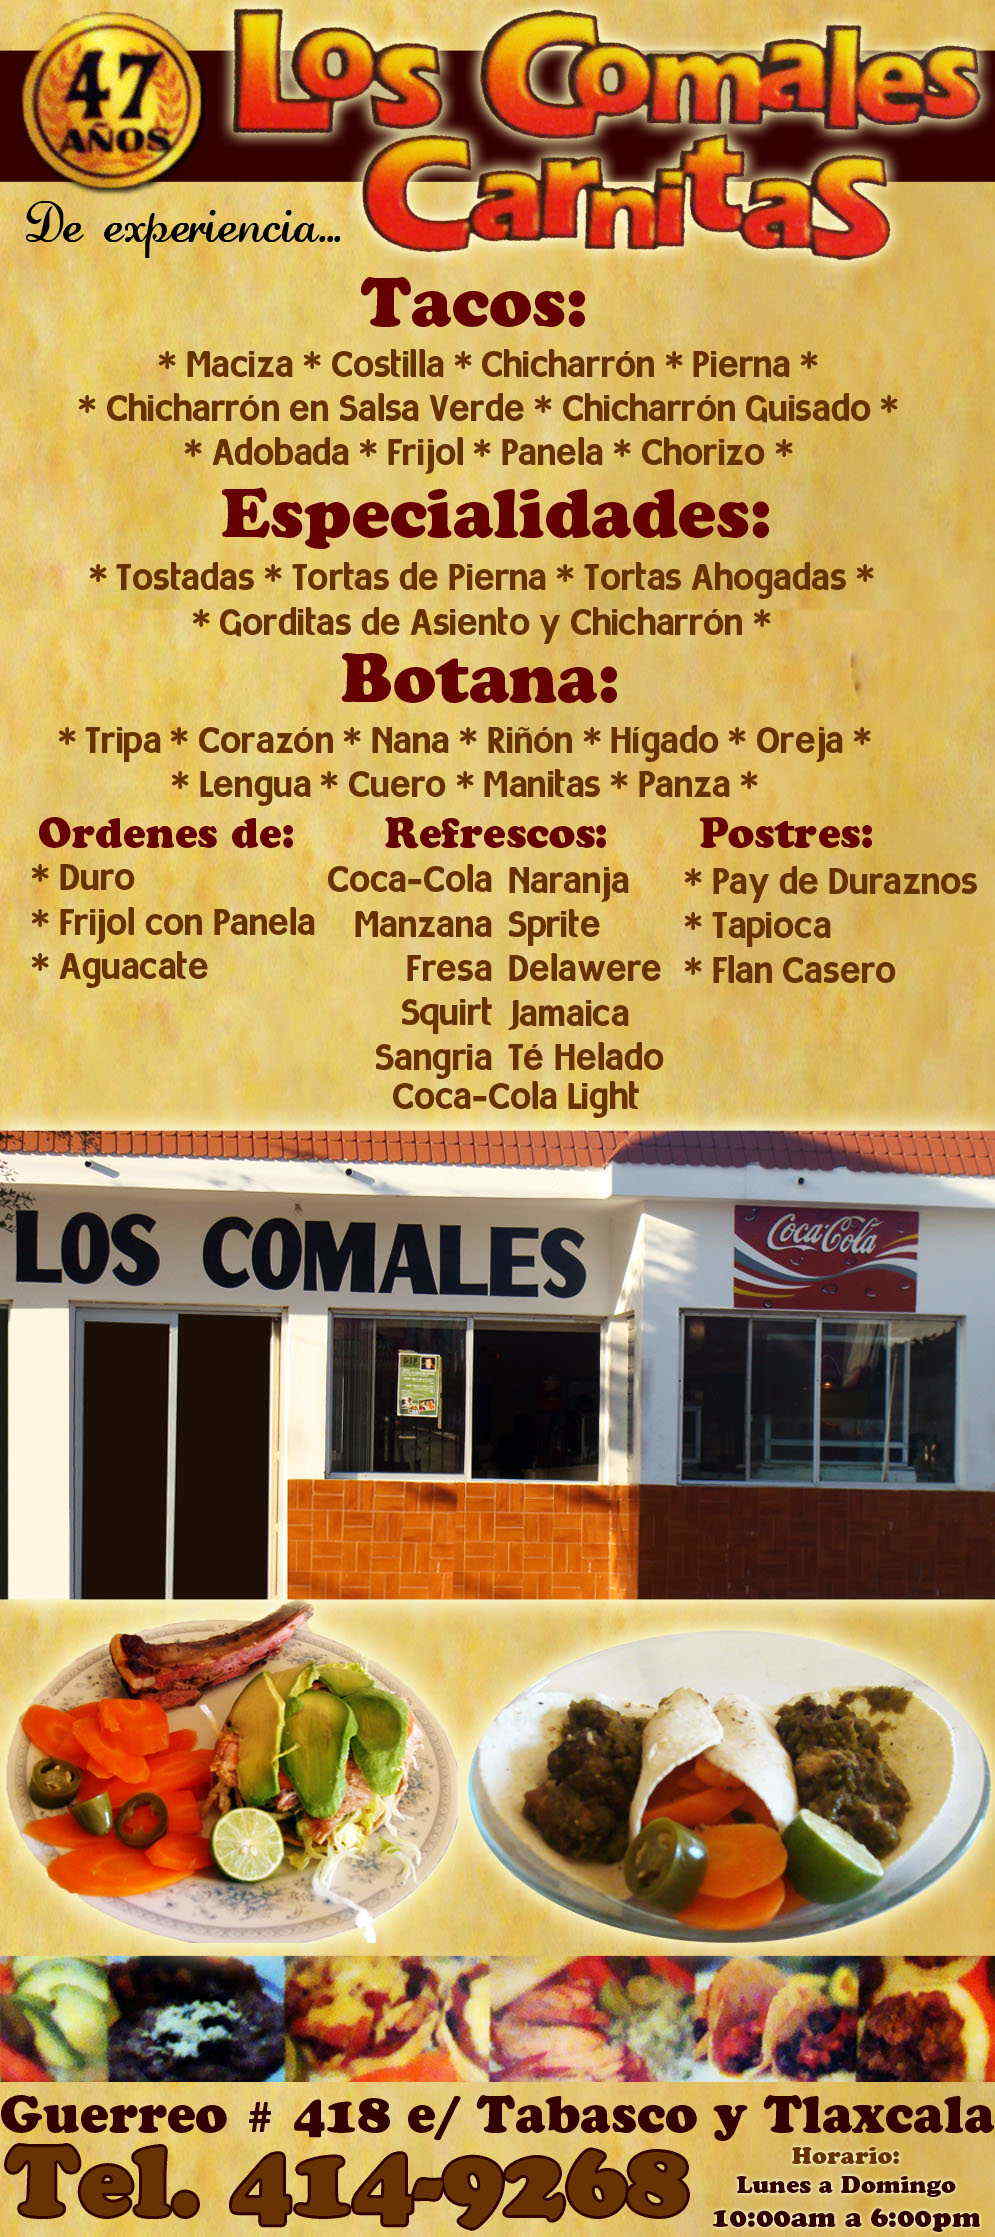 Taqueria Los Comales-``AL ESTILO MICHOACANO´´..Tenemos  Carnitas, Tacos,Gorditas, Tostadas,Tortas.
 Contamos con Servicios a domicilio
y servicio para eventos.        